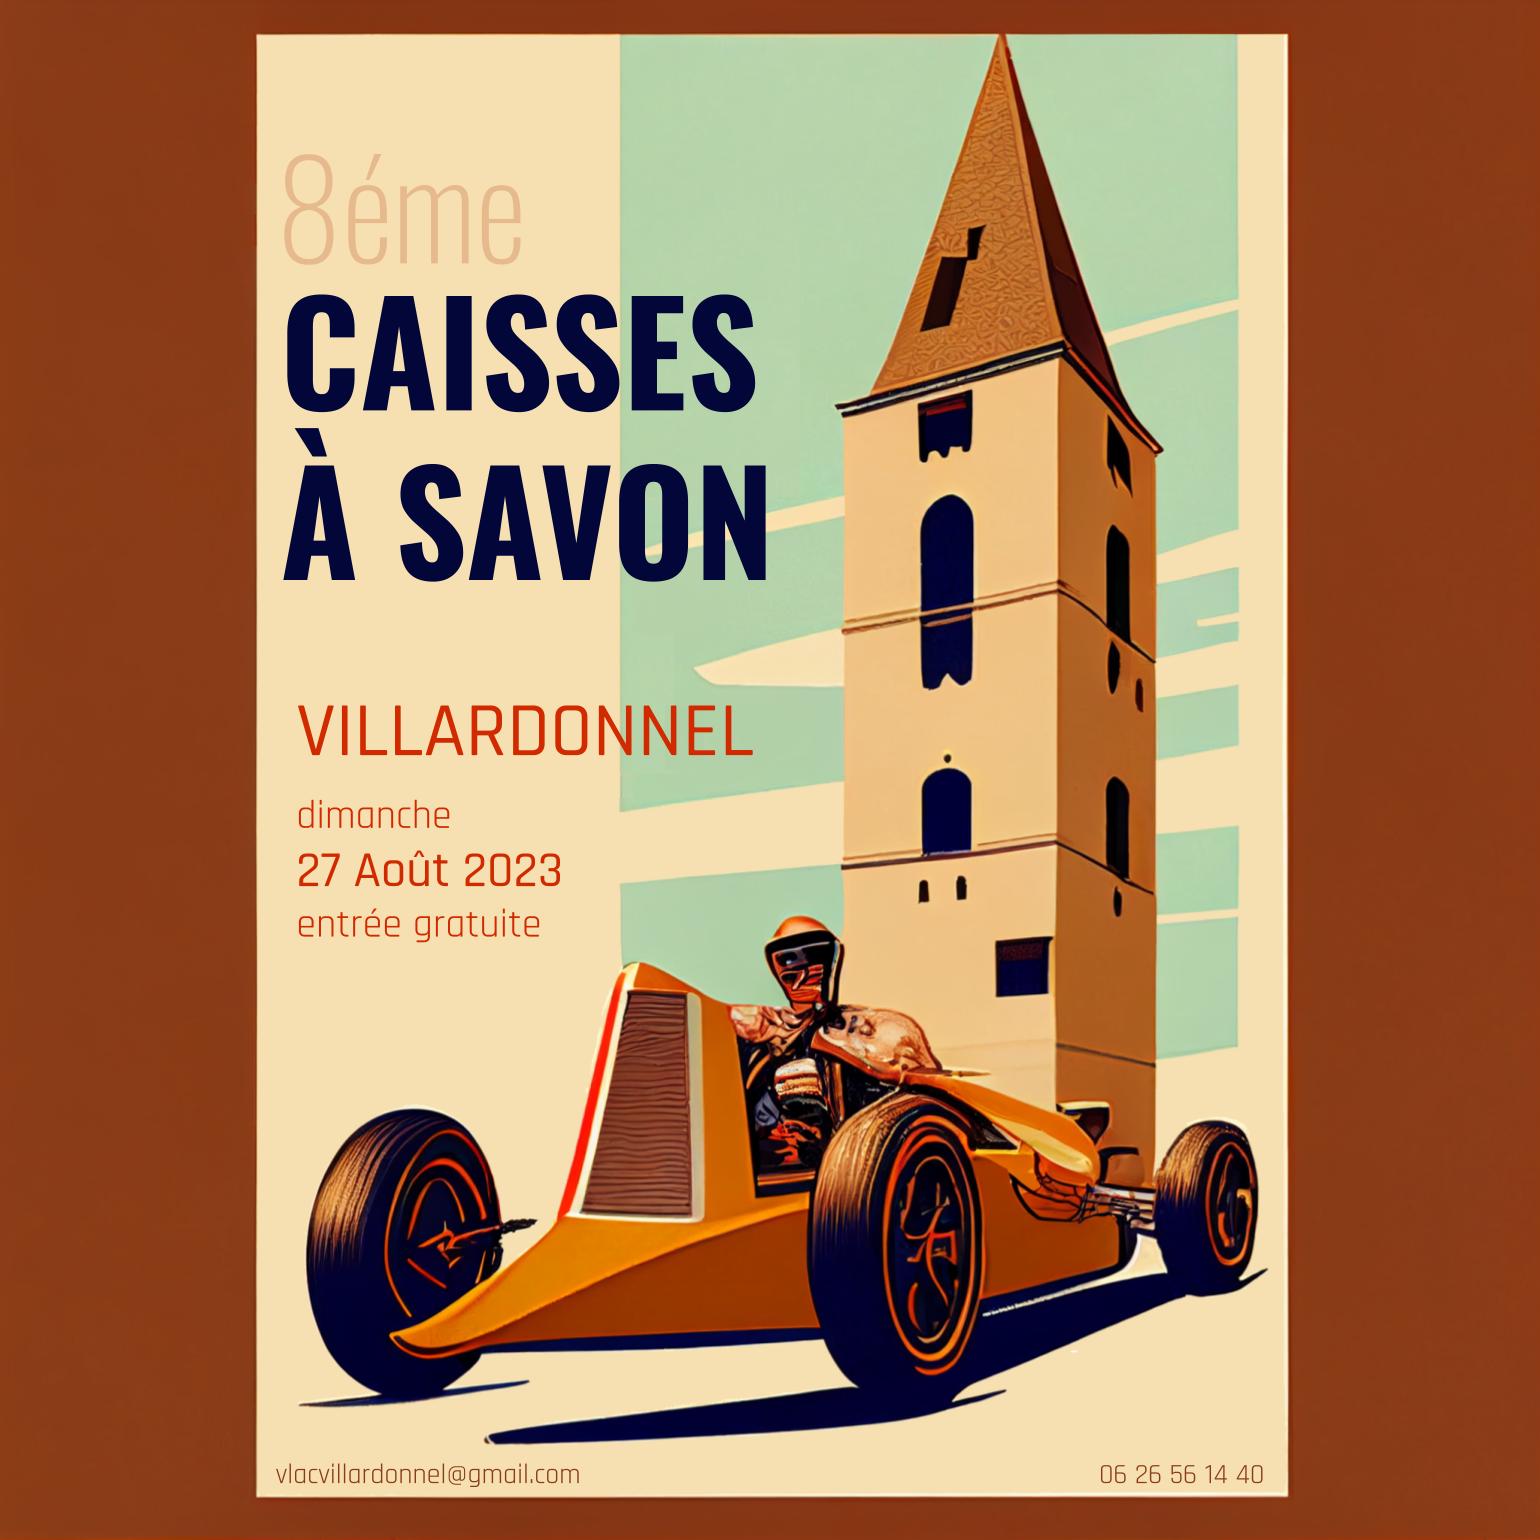 Affiche de la 8éme course de caisse à savon de Villardonnel le dimanche 27 aout 2023